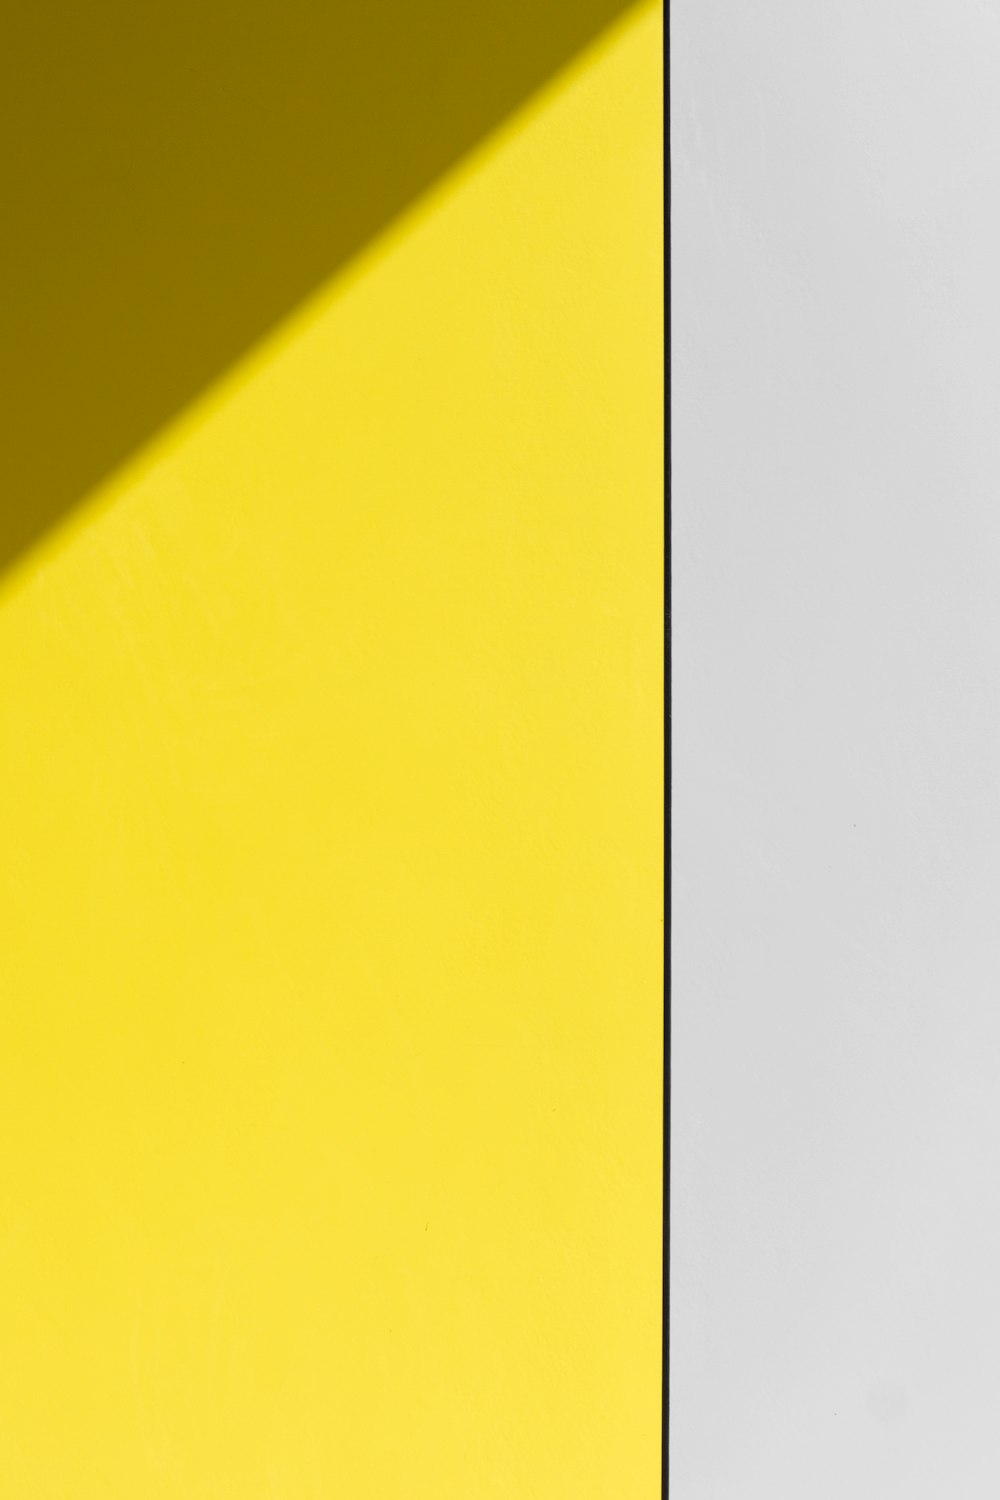 pared pintada de amarillo y blanco